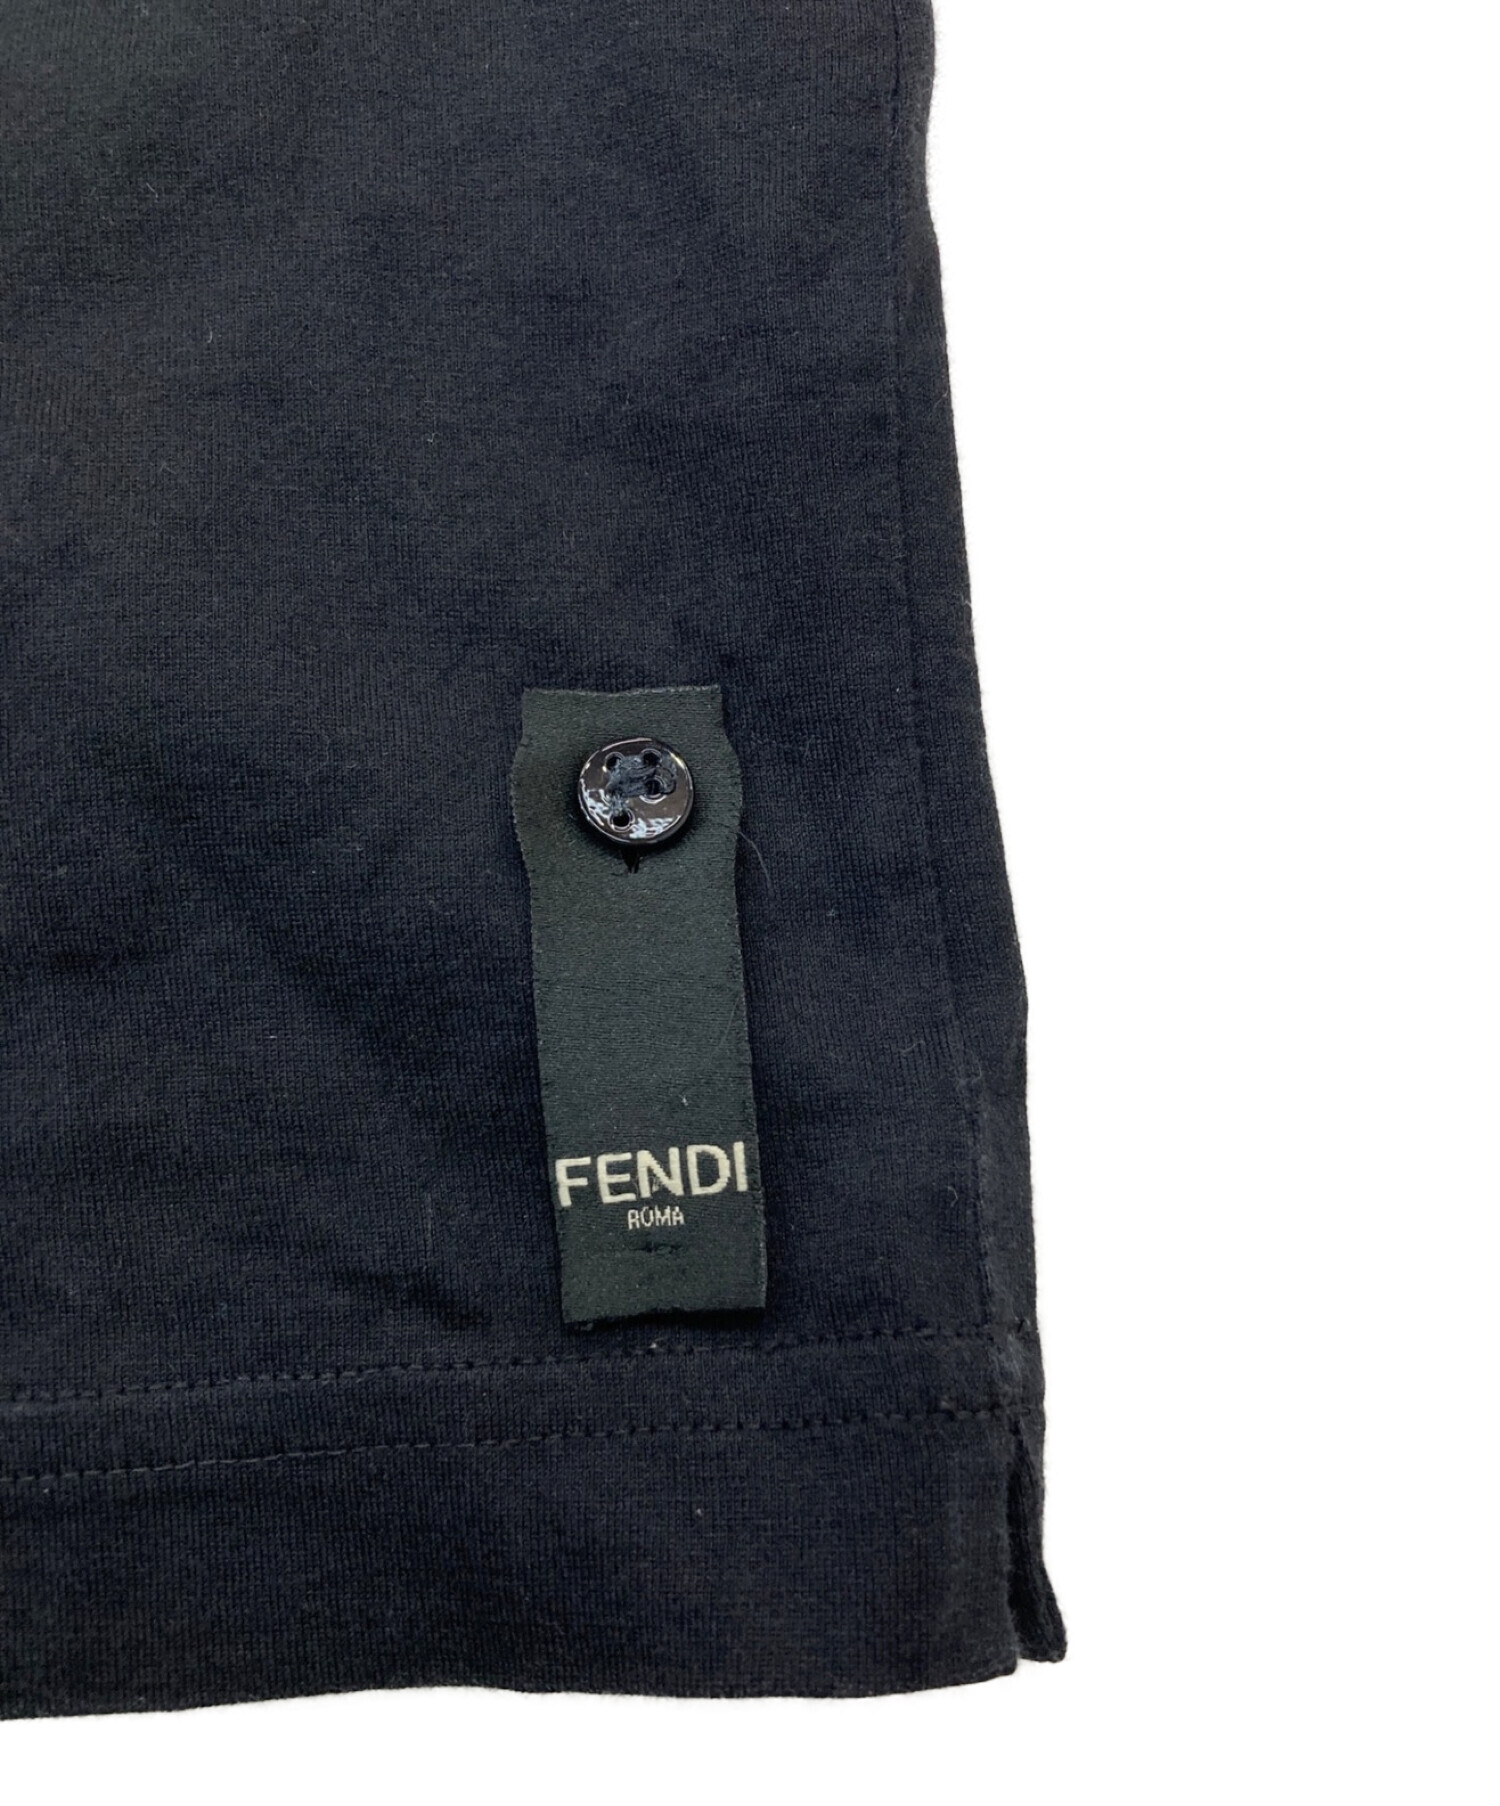 FENDI (フェンディ) モンスターバグスレザーパッチTシャツ ブラック サイズ:46